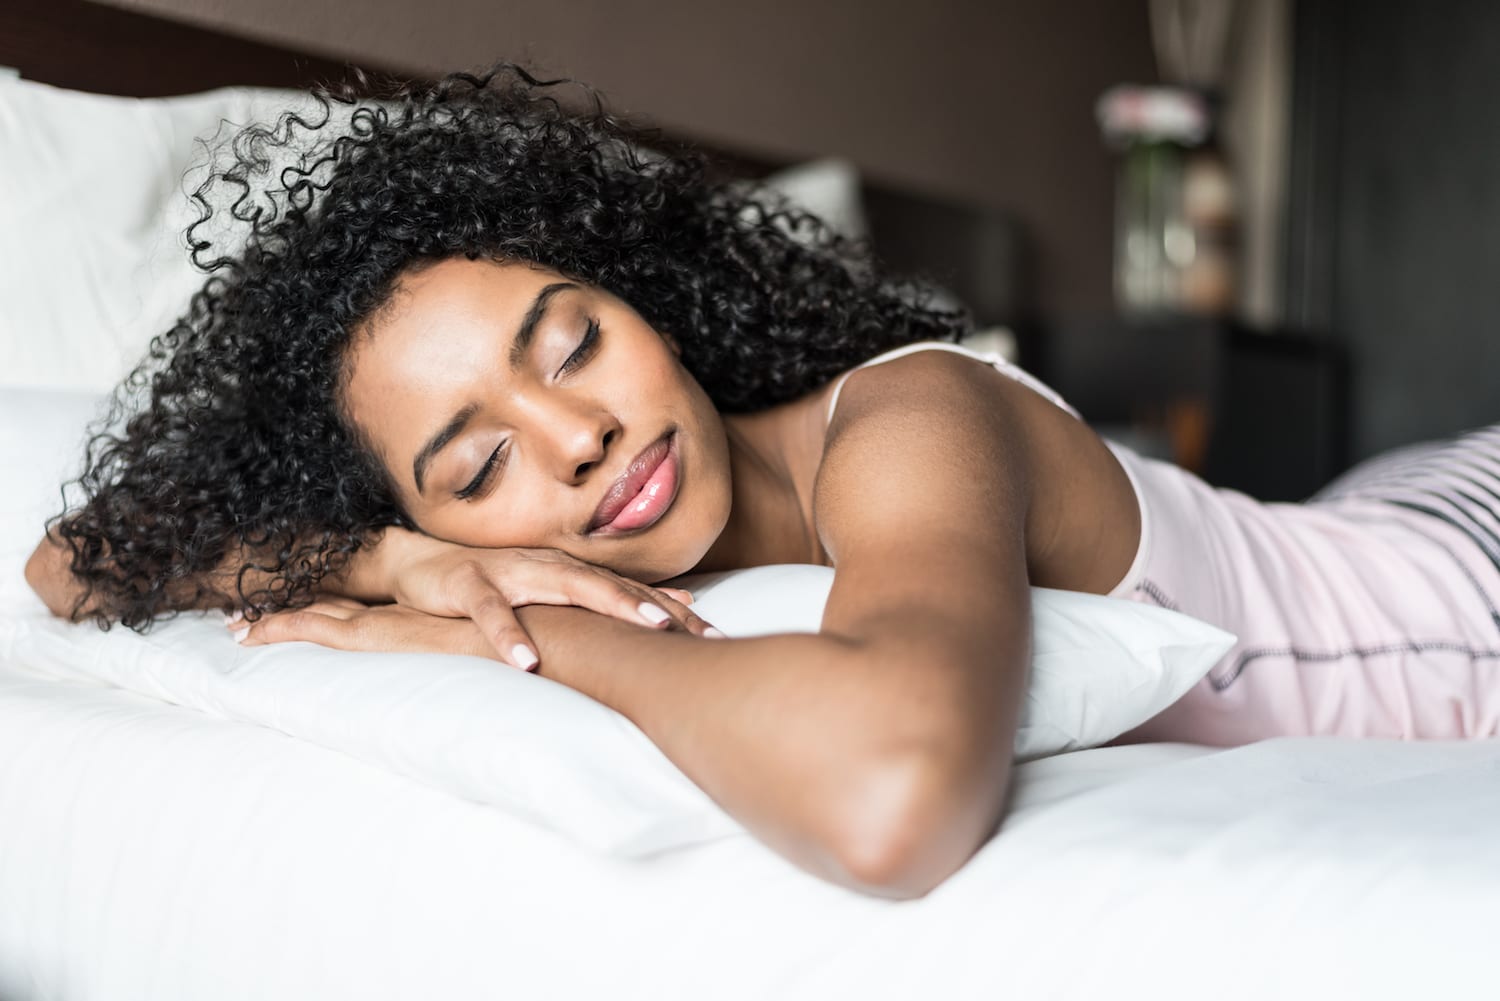 How Women's Sleep Changes Across the Lifespan